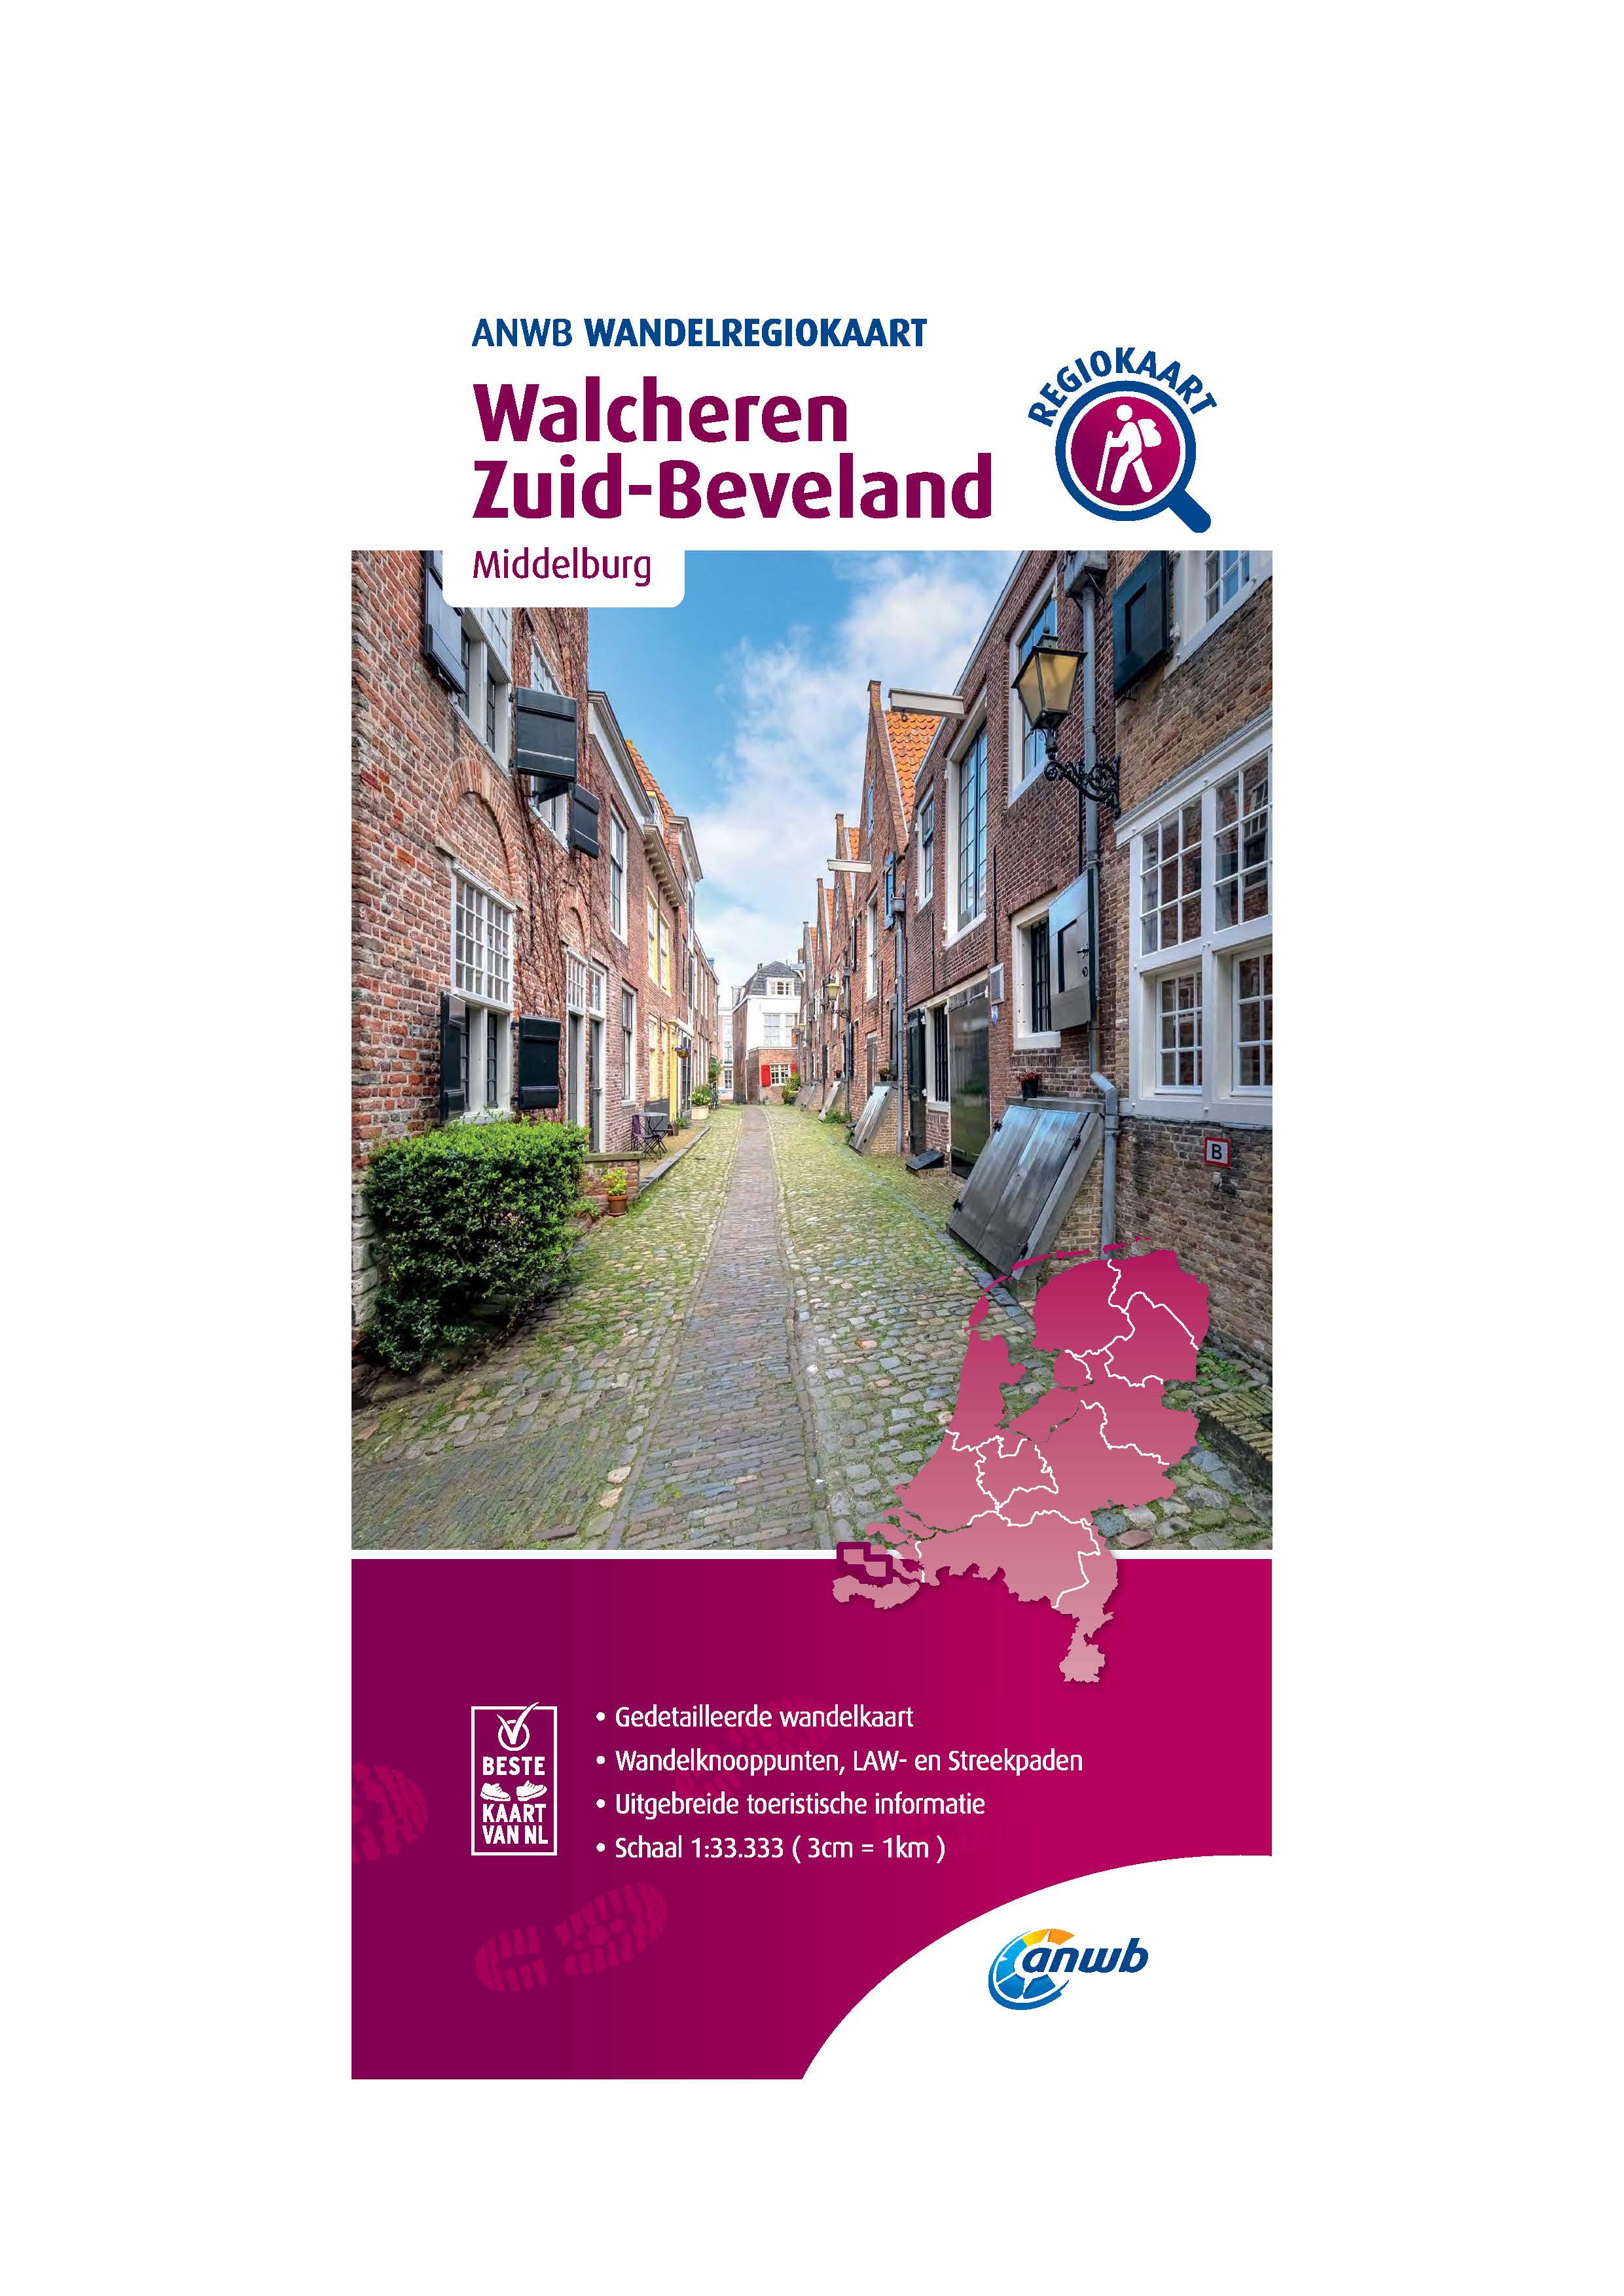 Walcheren Zuid-Beverland Wandelregiokaart - 1/33